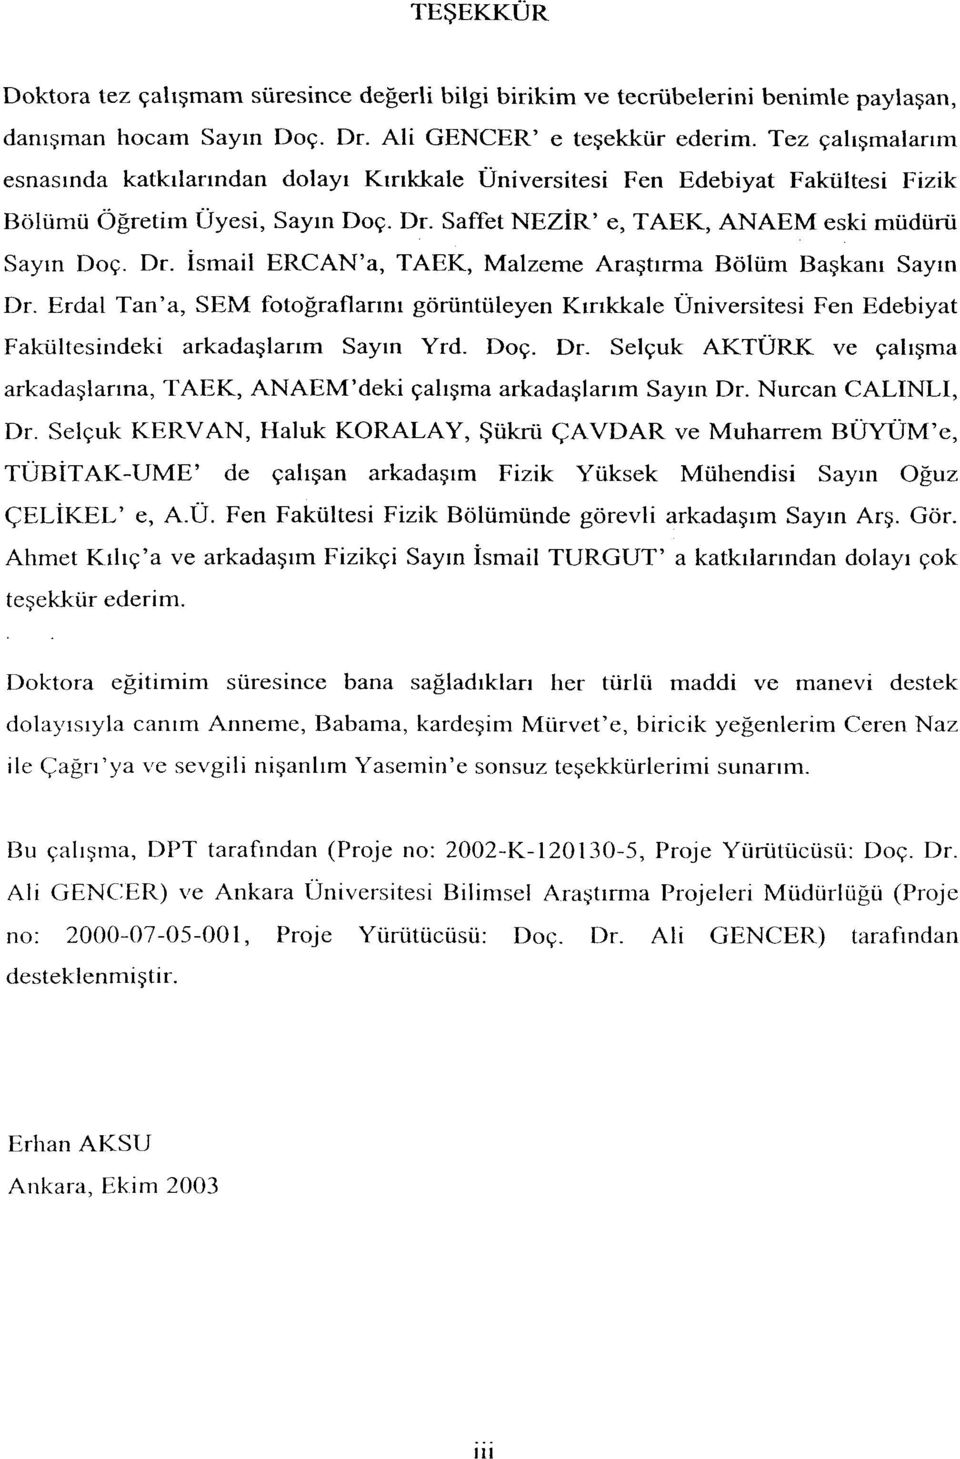 Erdal Tan'a, SEM fotoğraflarını görüntüleyen Kırıkkale Üniversitesi Fen Edebiyat Fakültesindeki arkadaşlarım Sayın Yrd. Doç. Dr.